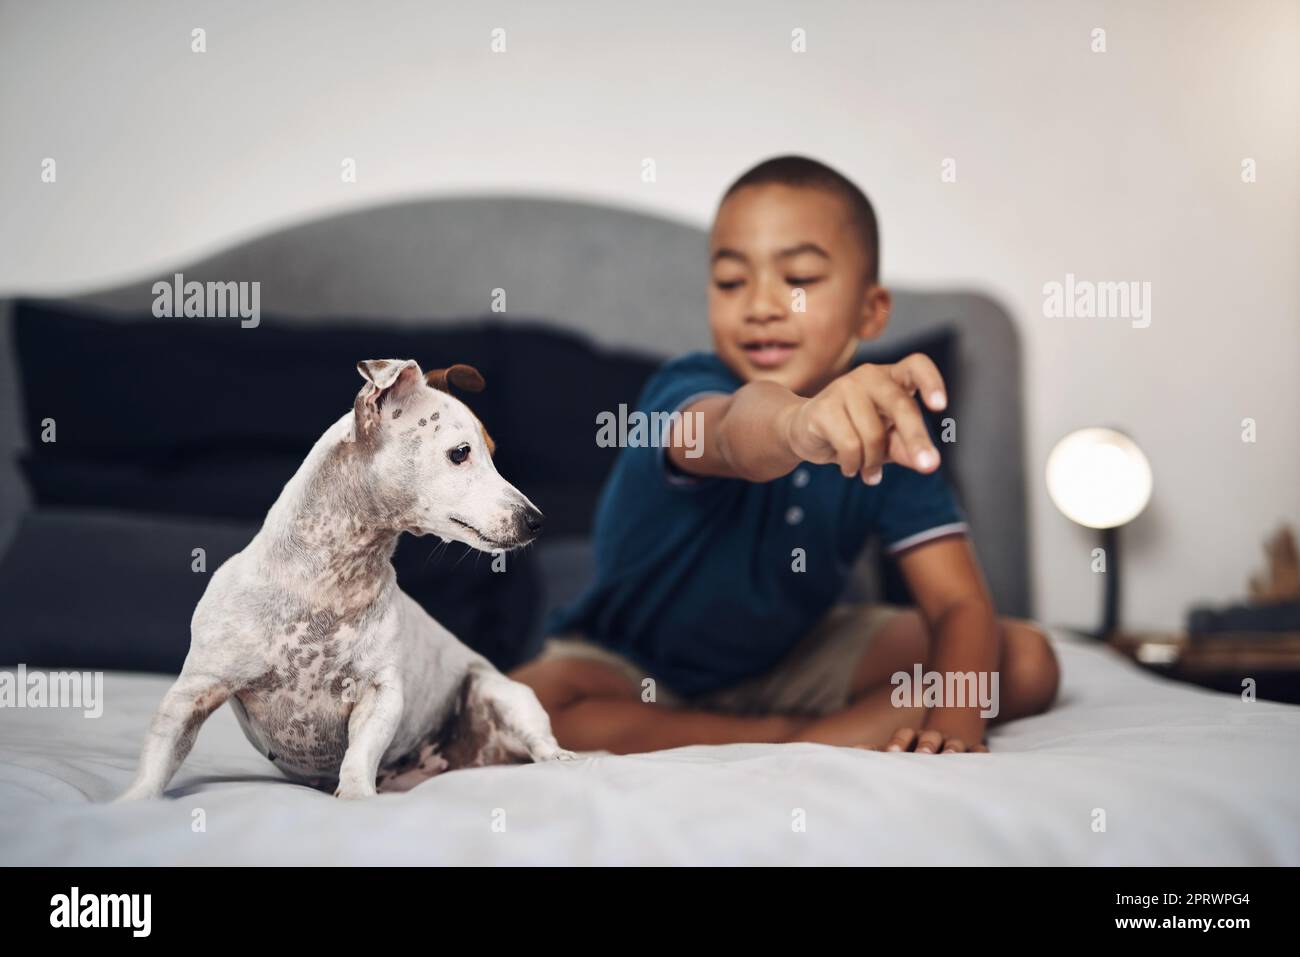 Vierbeinige Spielkameraden bilden die besten Kameraden. Ein entzückender kleiner Junge spielt mit seinem Hund auf dem Bett zu Hause. Stockfoto